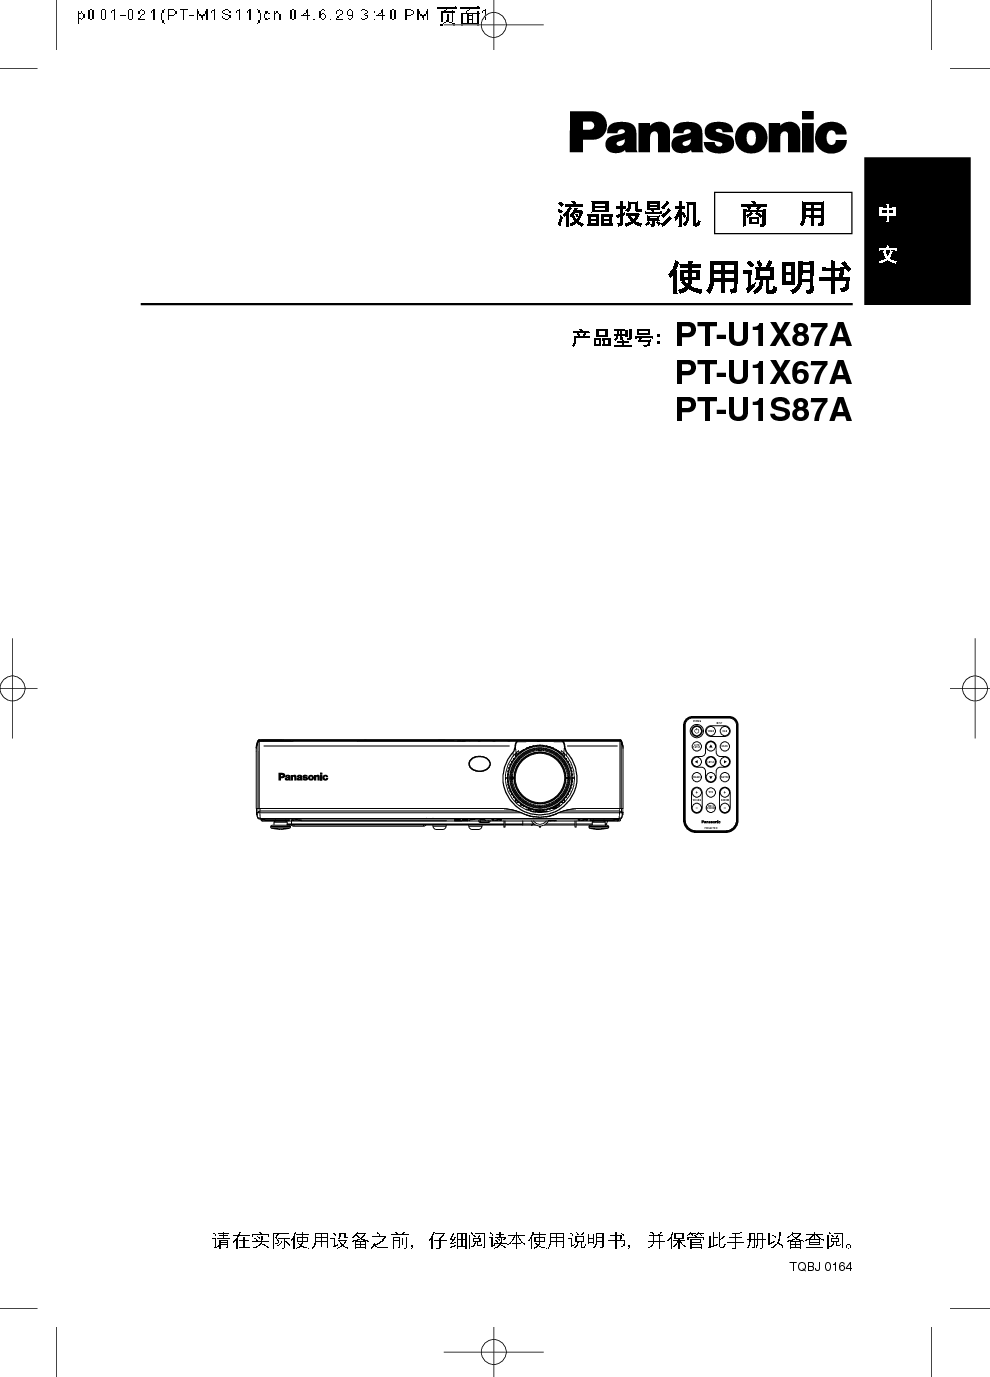 松下 Panasonic PT-U1AX67A 说明书 封面